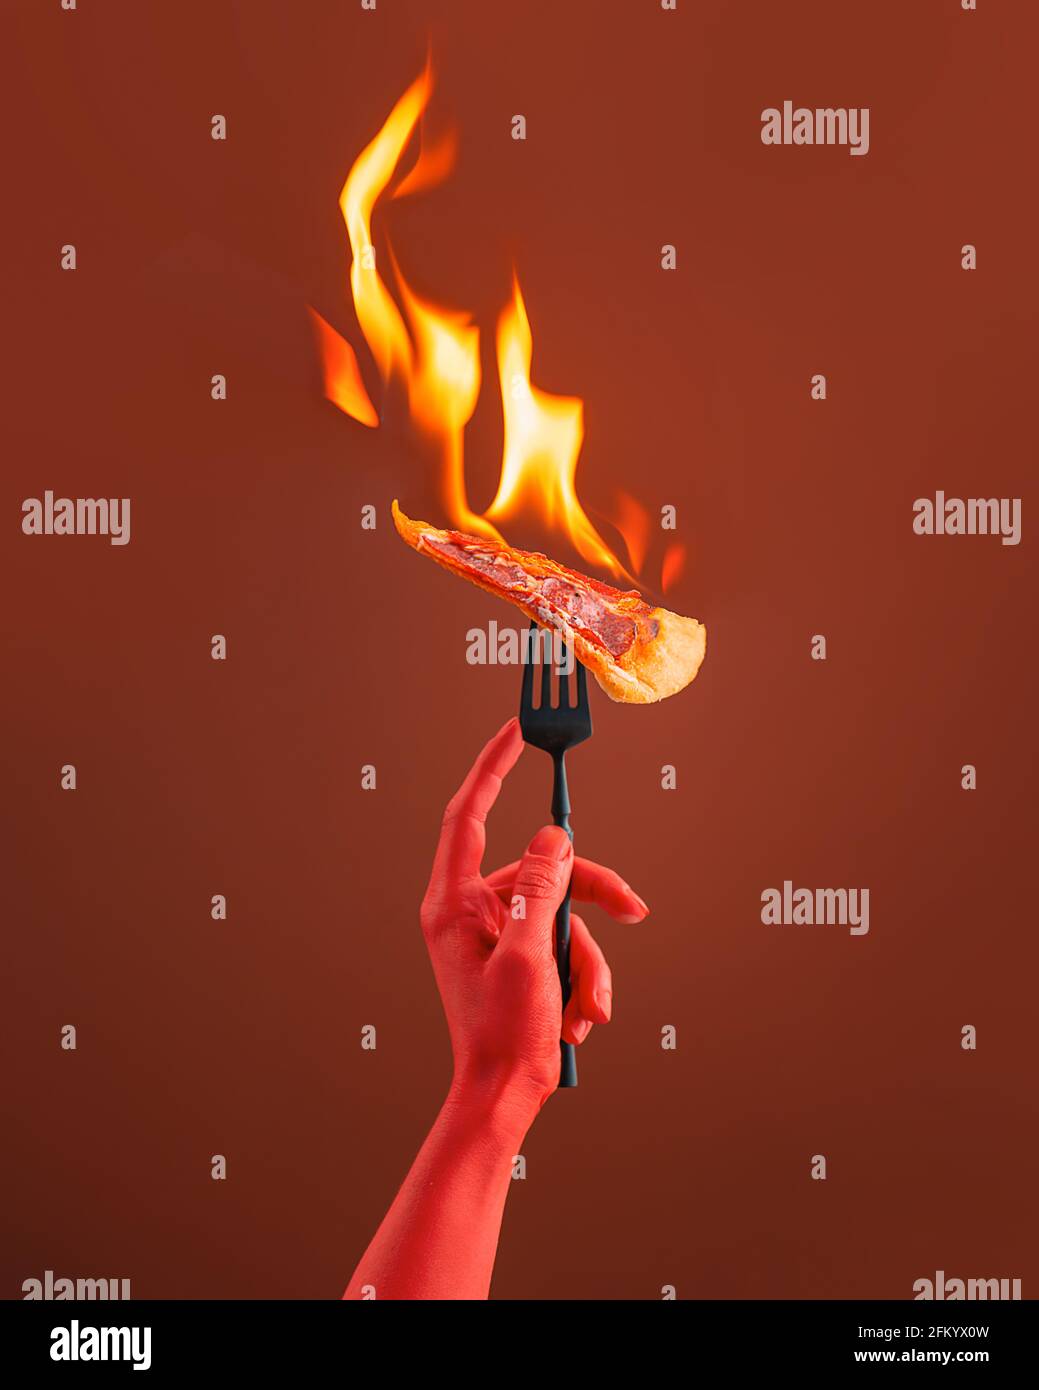 Feuer auf brennende Pizza, Essen Pizza mit einer Gabel, Teufels rote Hand, Hölle Konzept, kreative Food-Fotografie Stockfoto